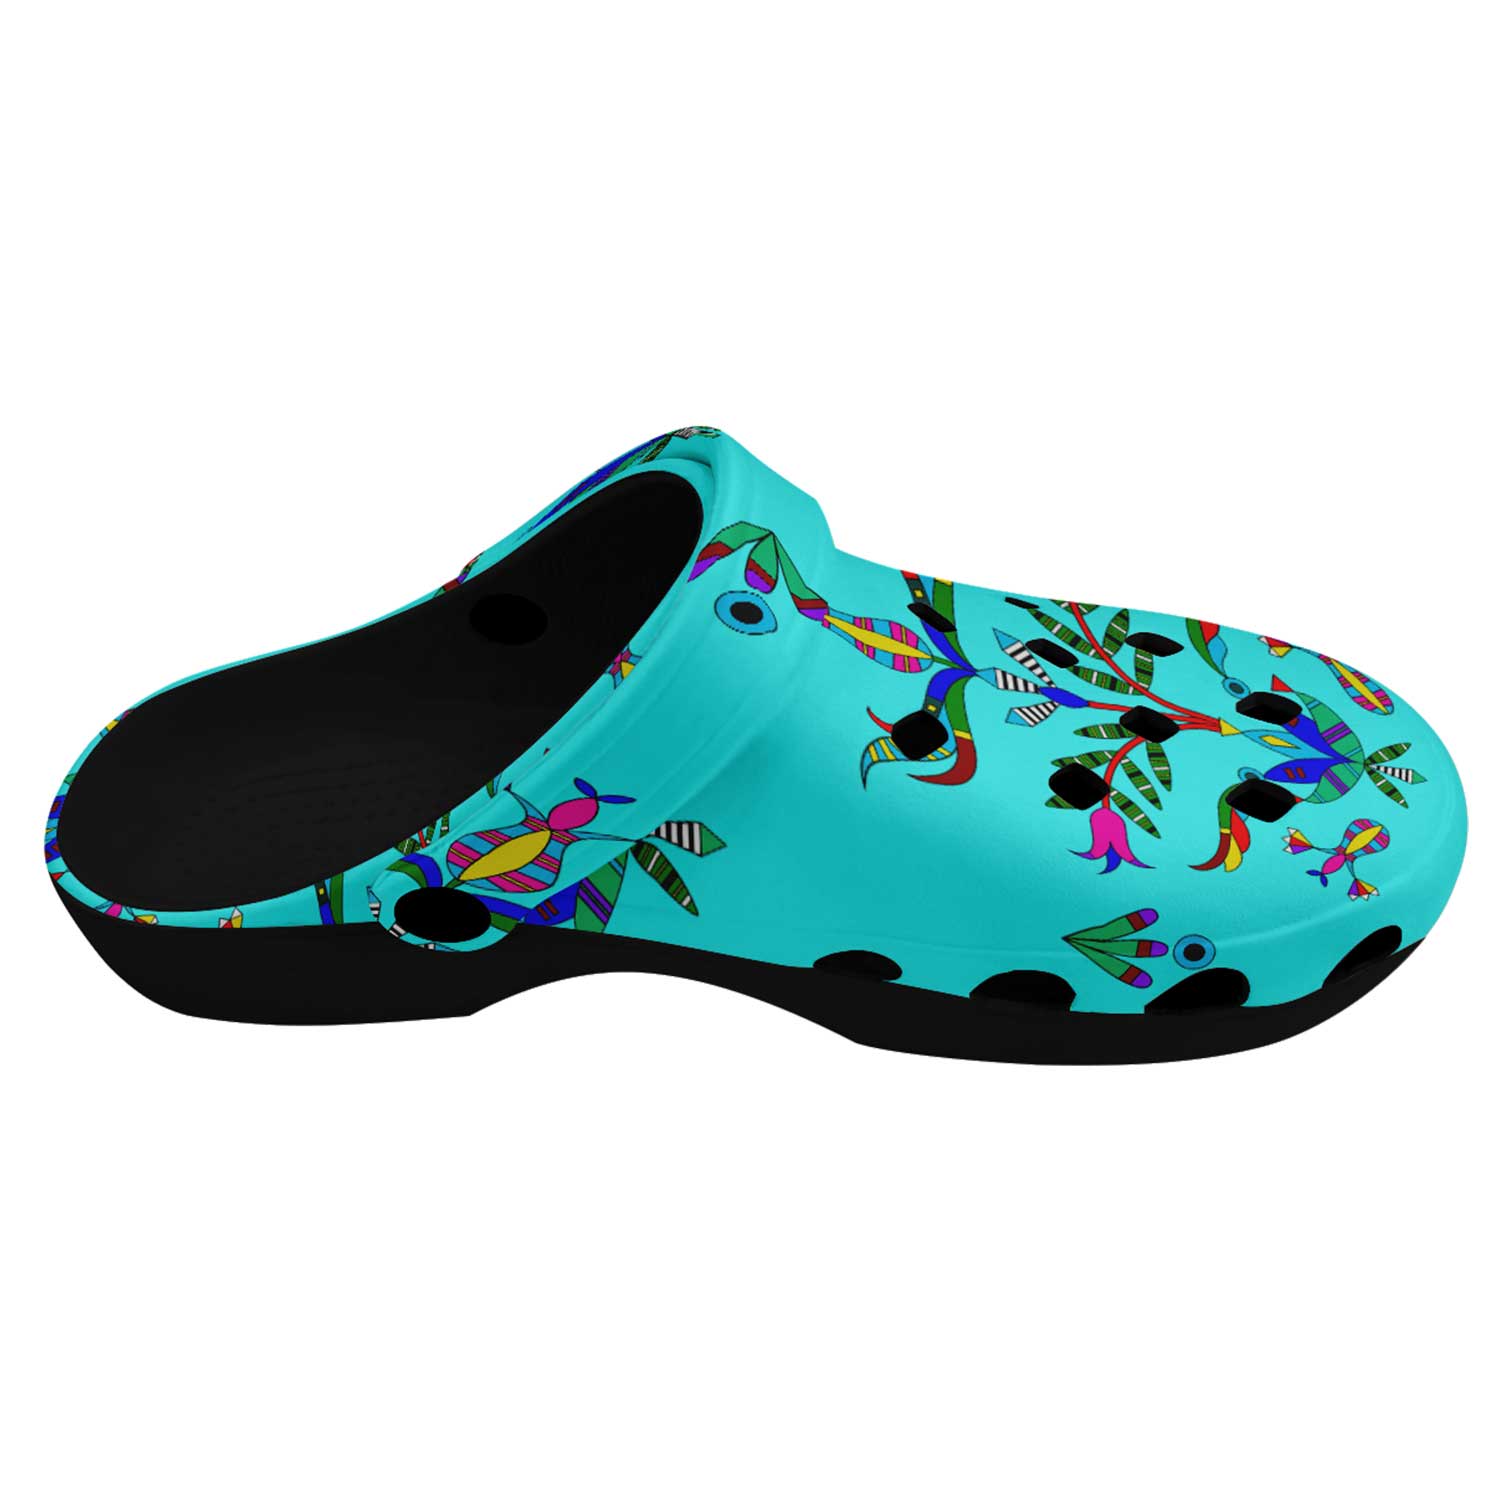 Dakota Damask Turquoise Muddies Unisex Clog Shoes